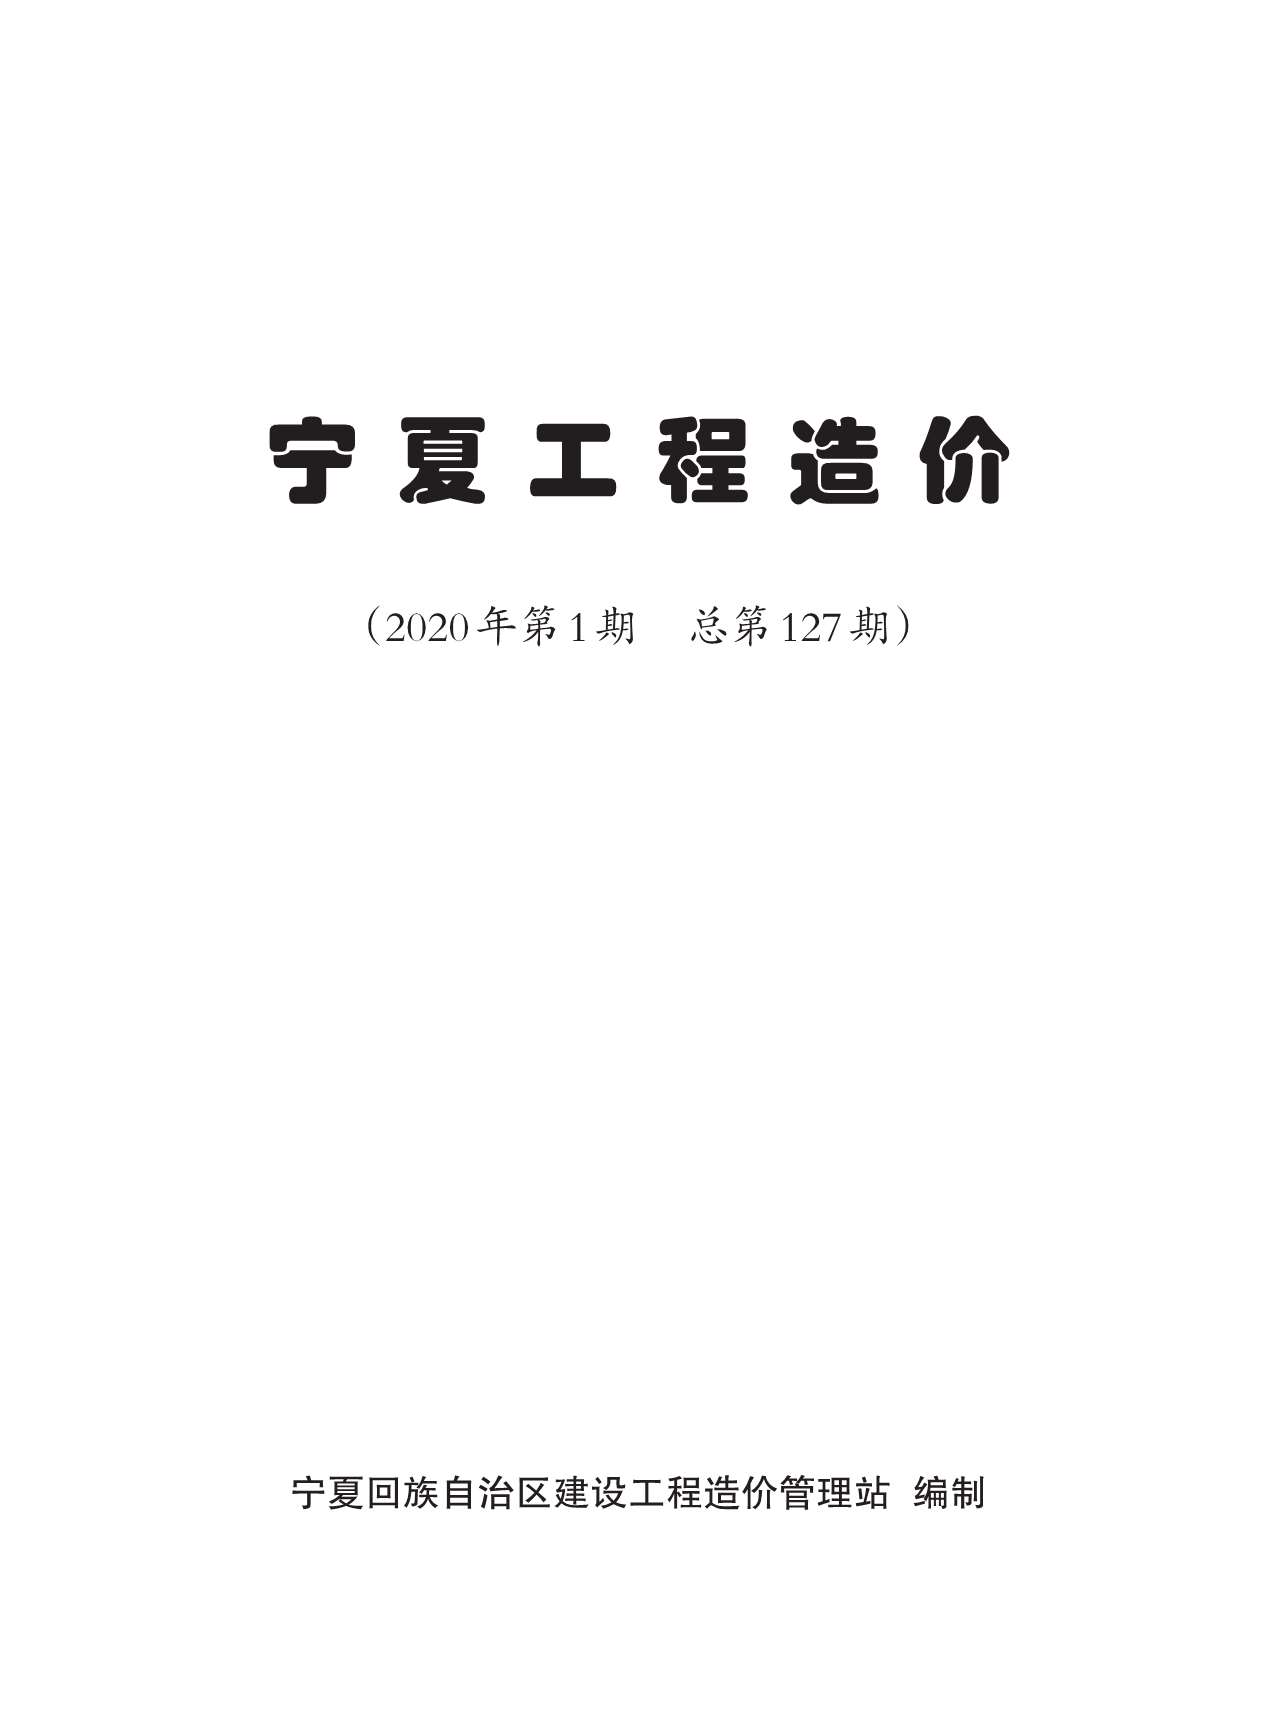 宁夏自治区2020年1月工程材料价